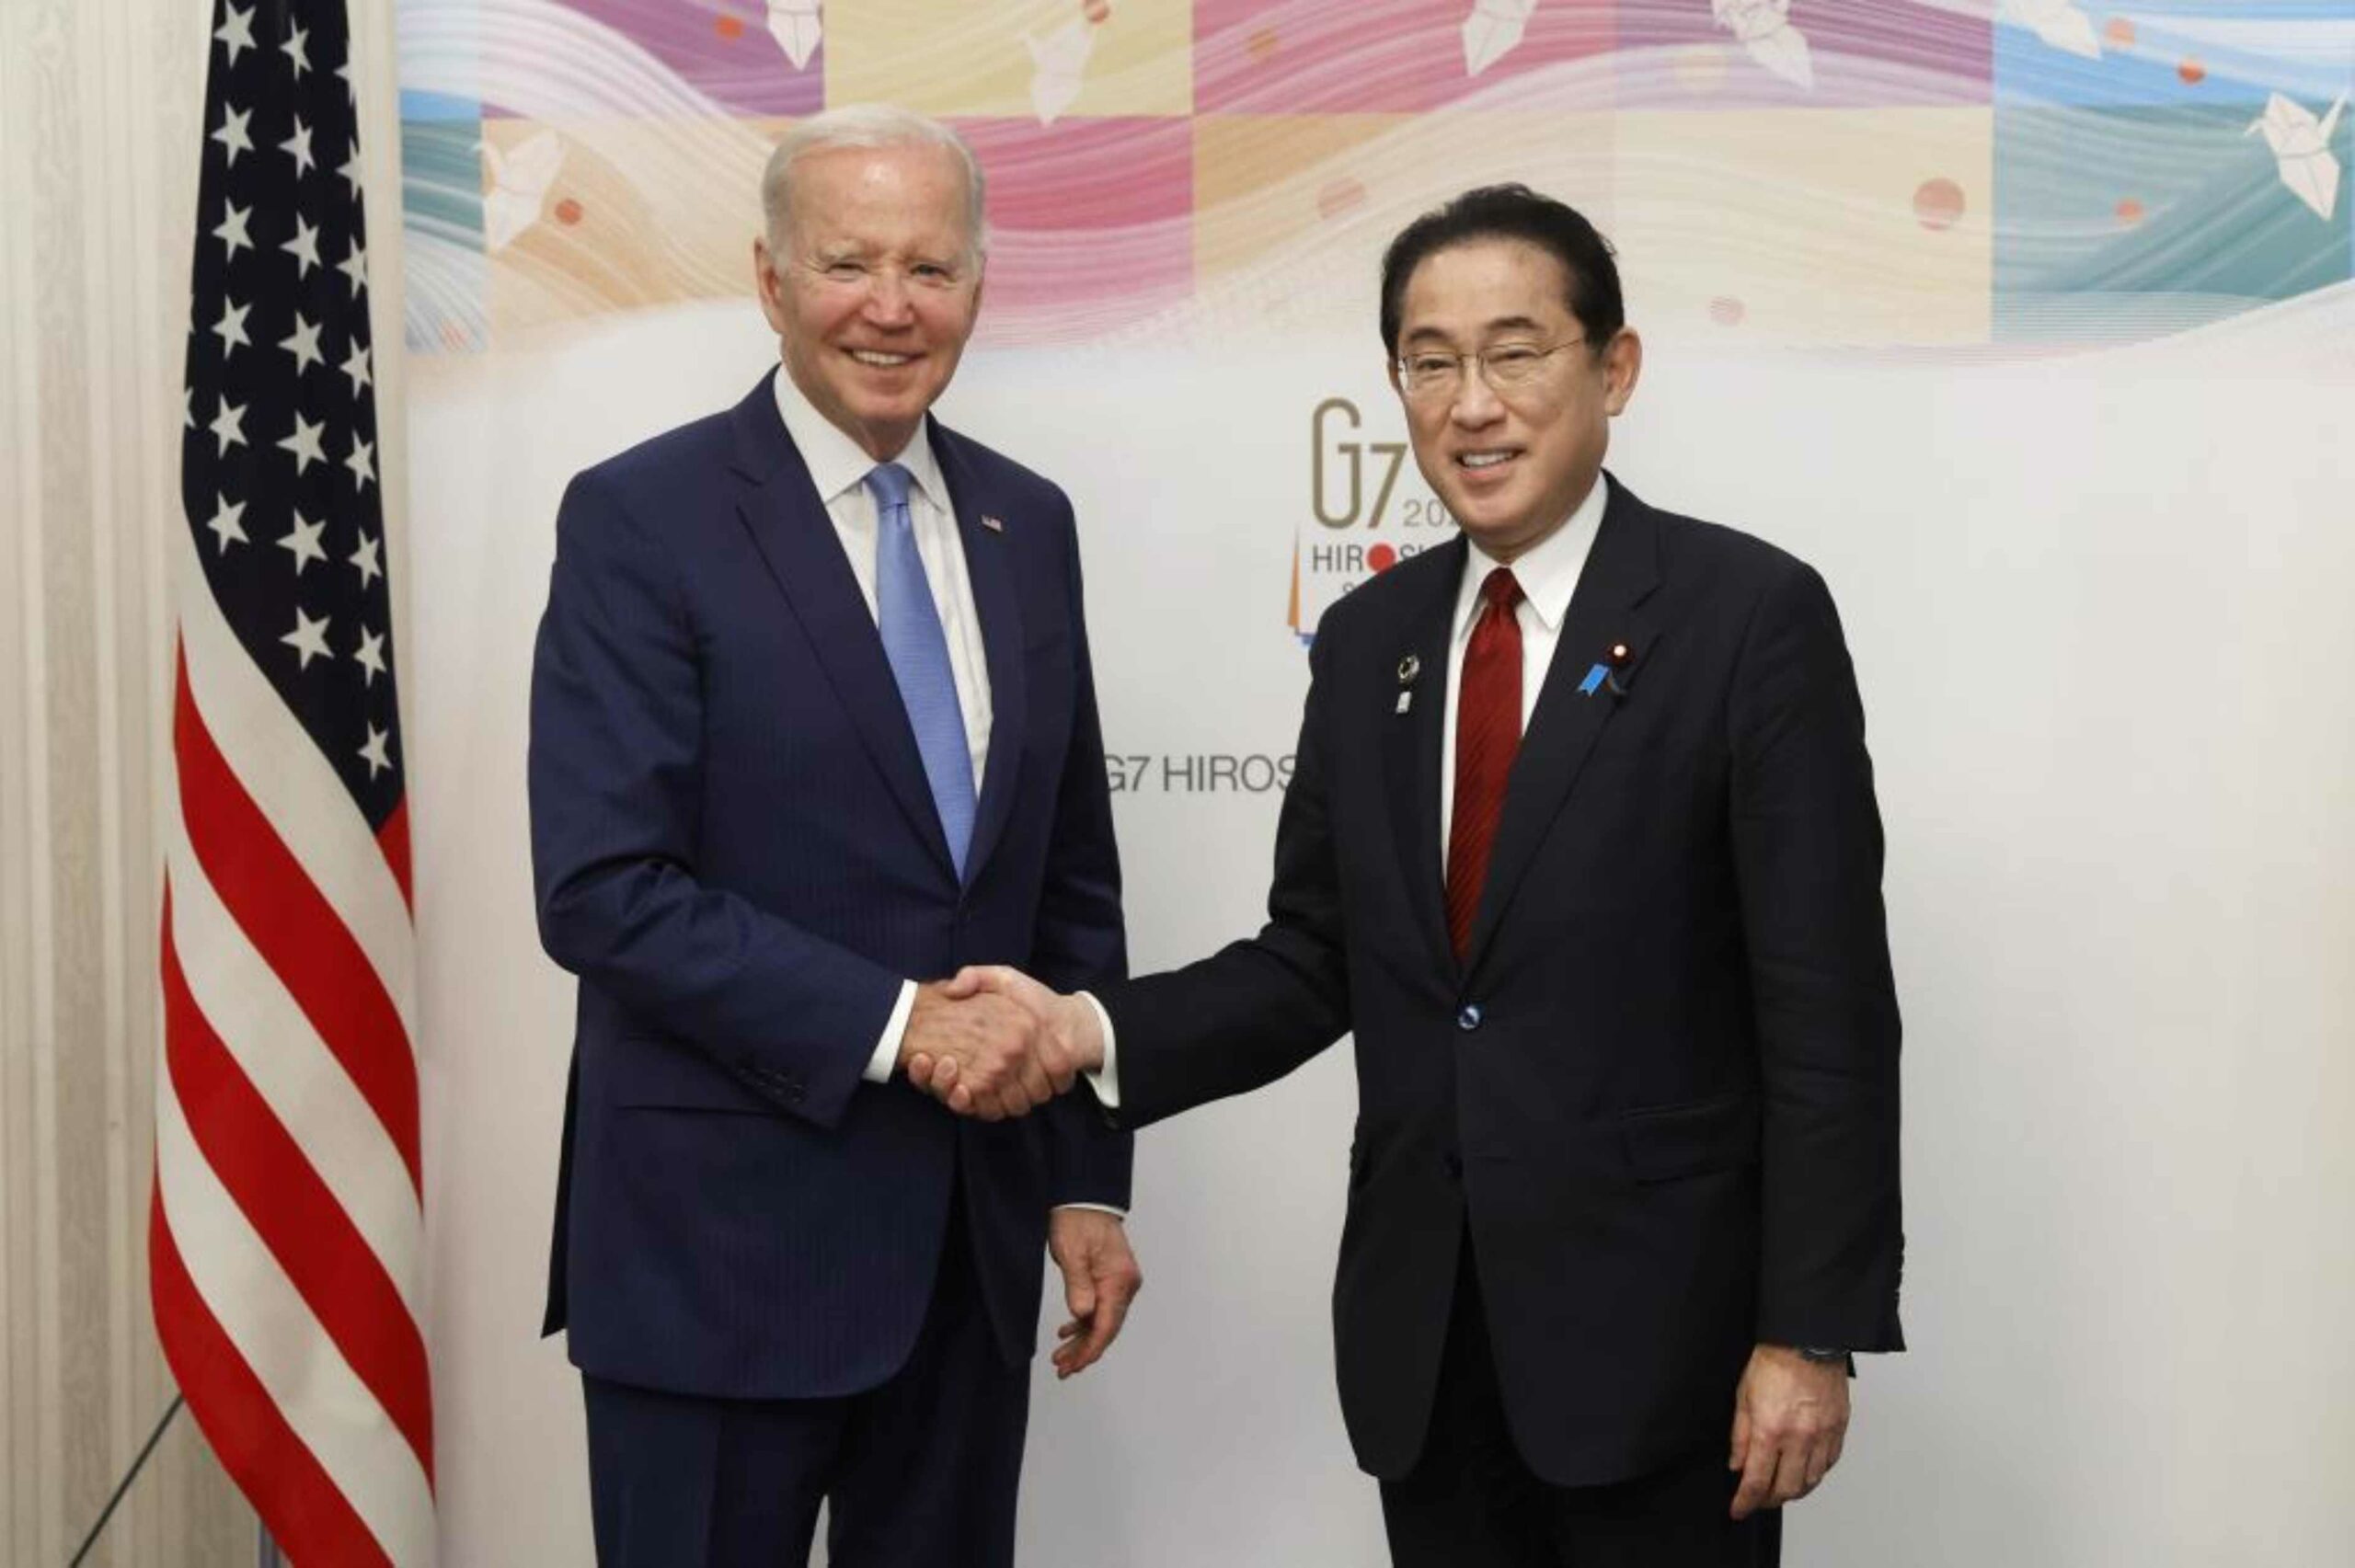 El presidente estadounidense Joe Biden anunció el mayor refuerzo de cooperación con Japón en el área de Defensa desde el fin de la Guerra Fría. Foto: AFP